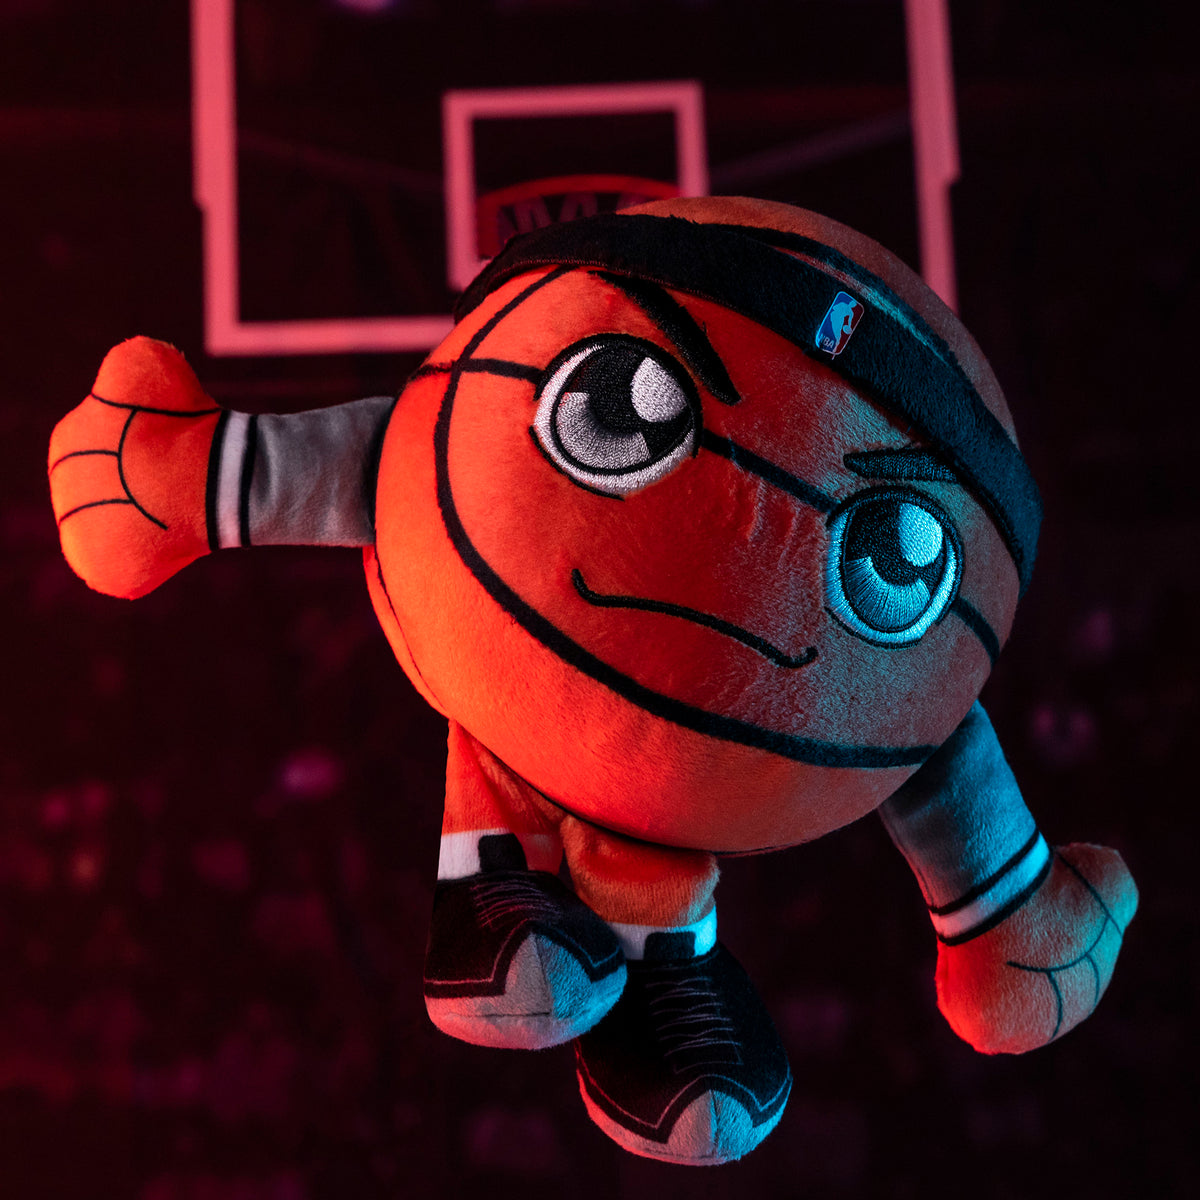 Brooklyn Nets 8&quot; Kuricha Basketball Plush